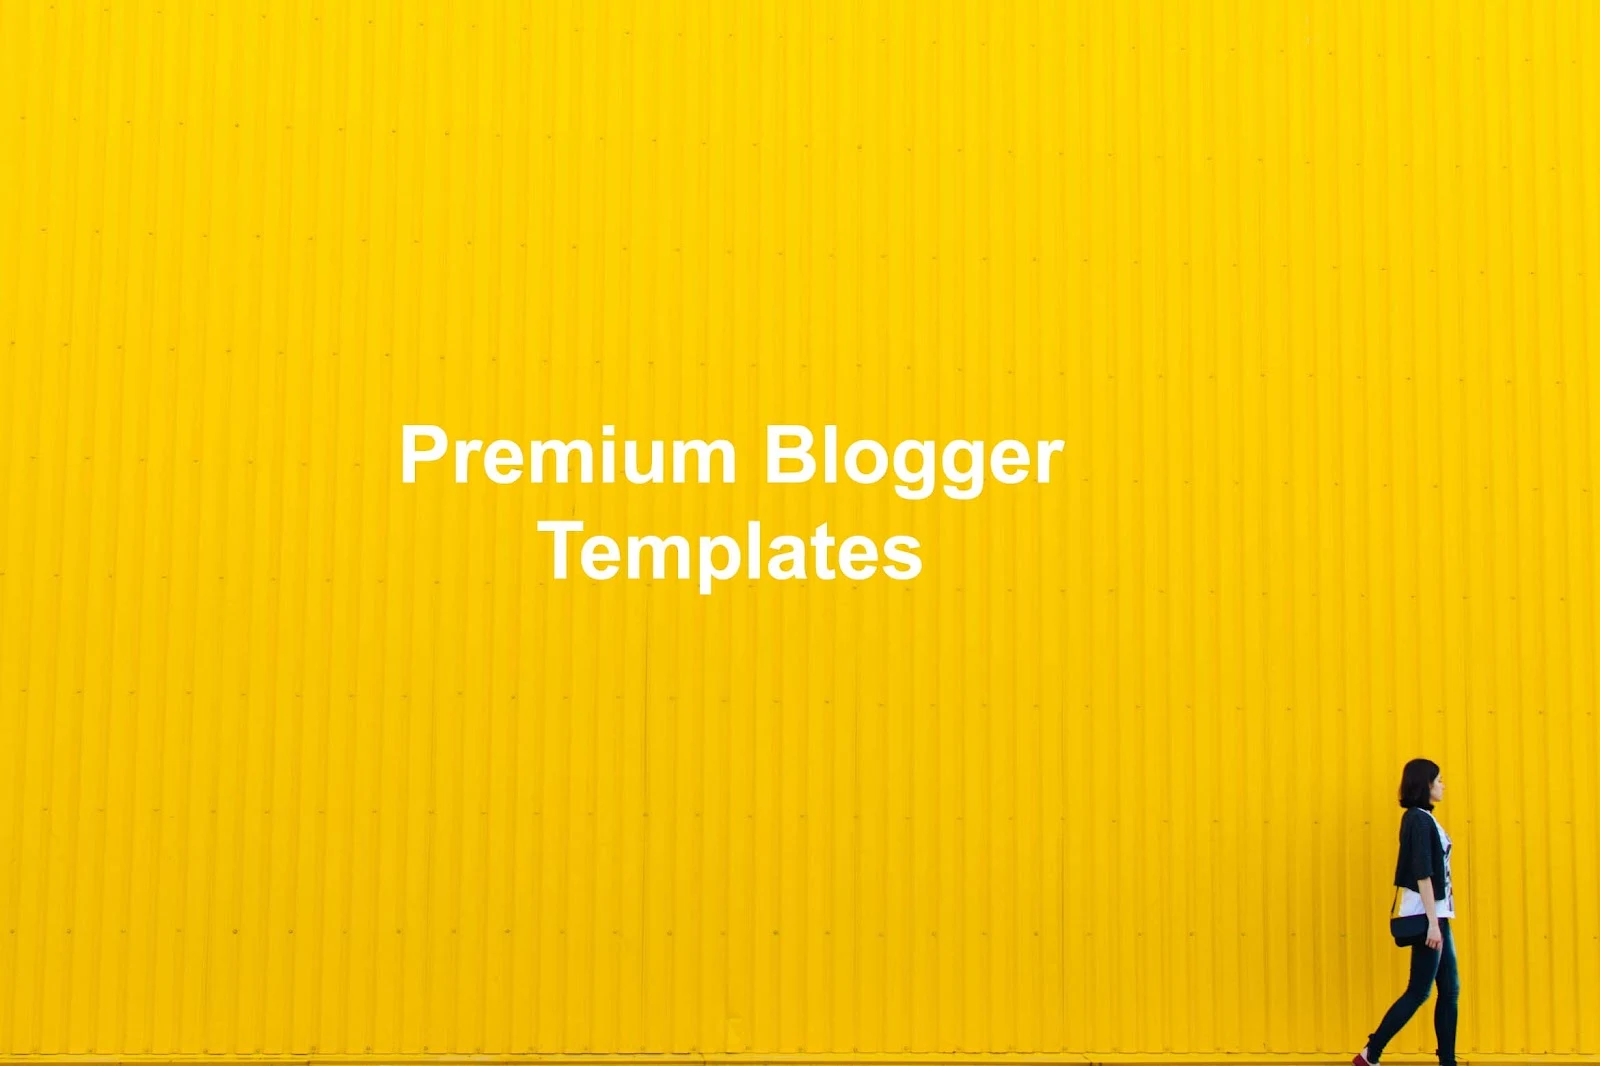 Free Premium Blogger Templates